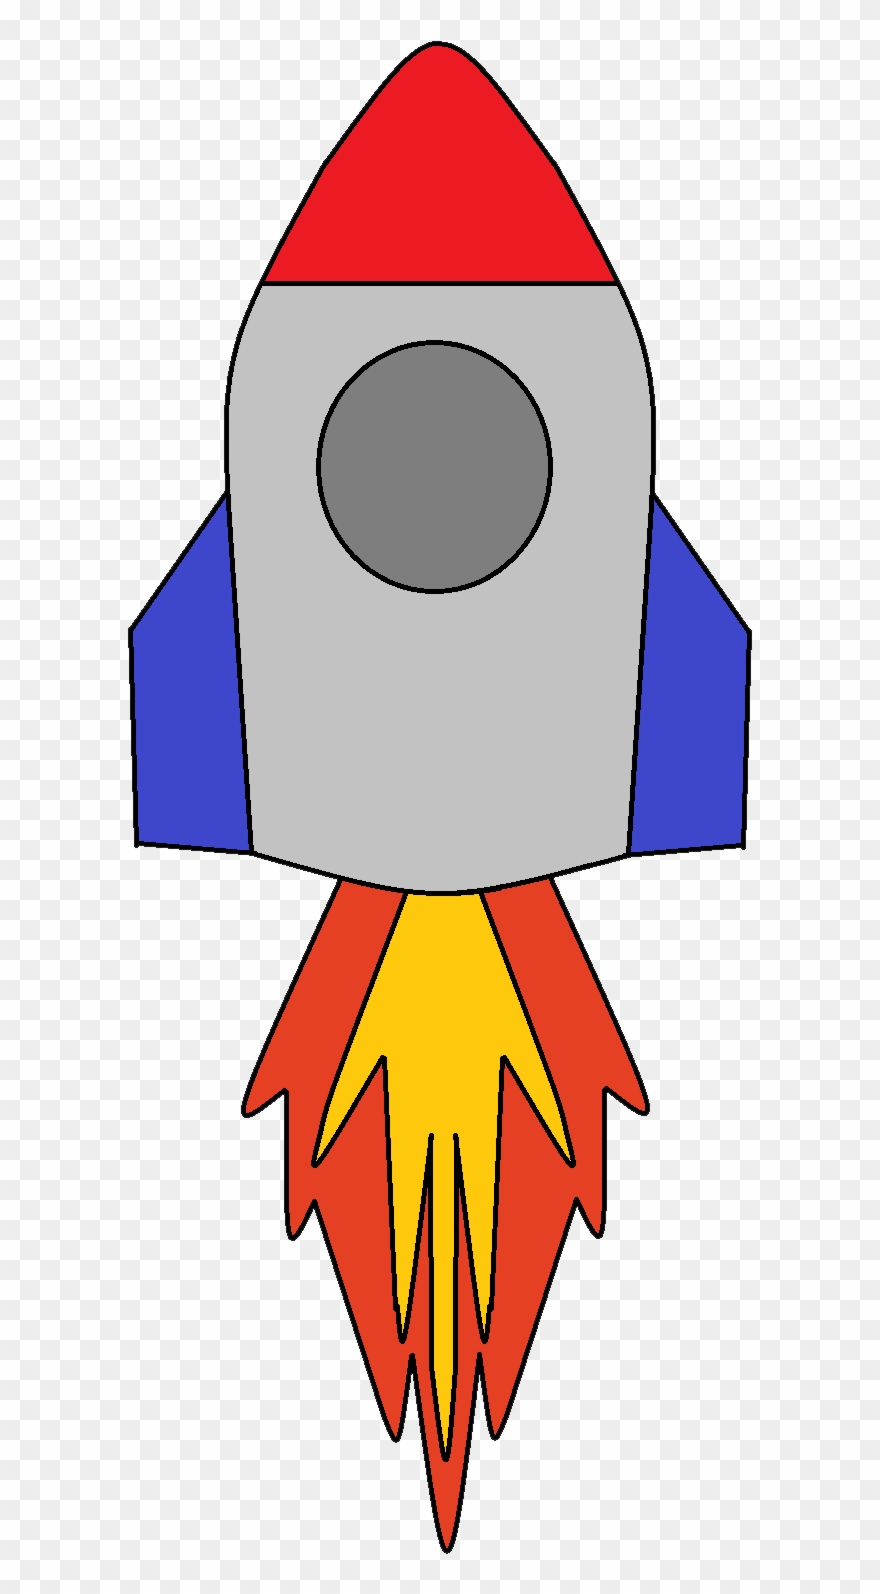 Nasa rocket ship.